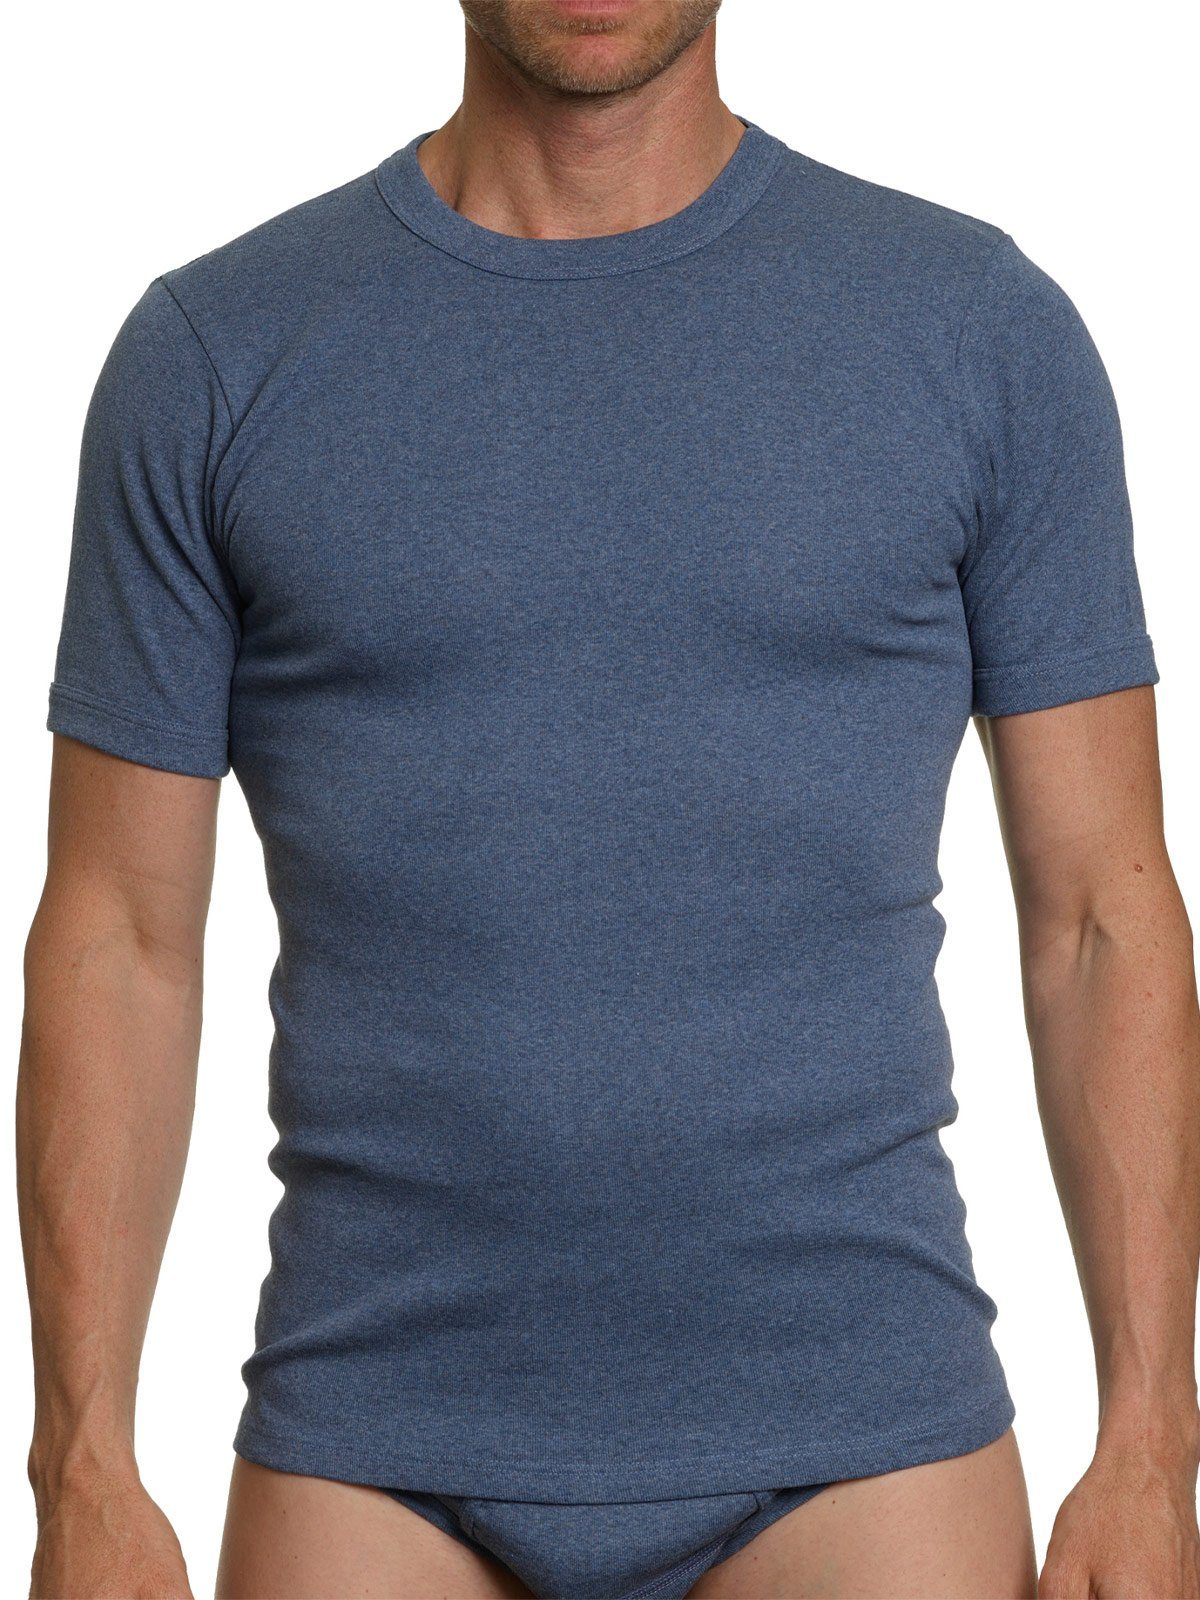 KUMPF Unterziehshirt 2er Sparpack Herren blau-melange 2-St) Workerwear hohe T-Shirt kiesel-melange Markenqualität (Spar-Set